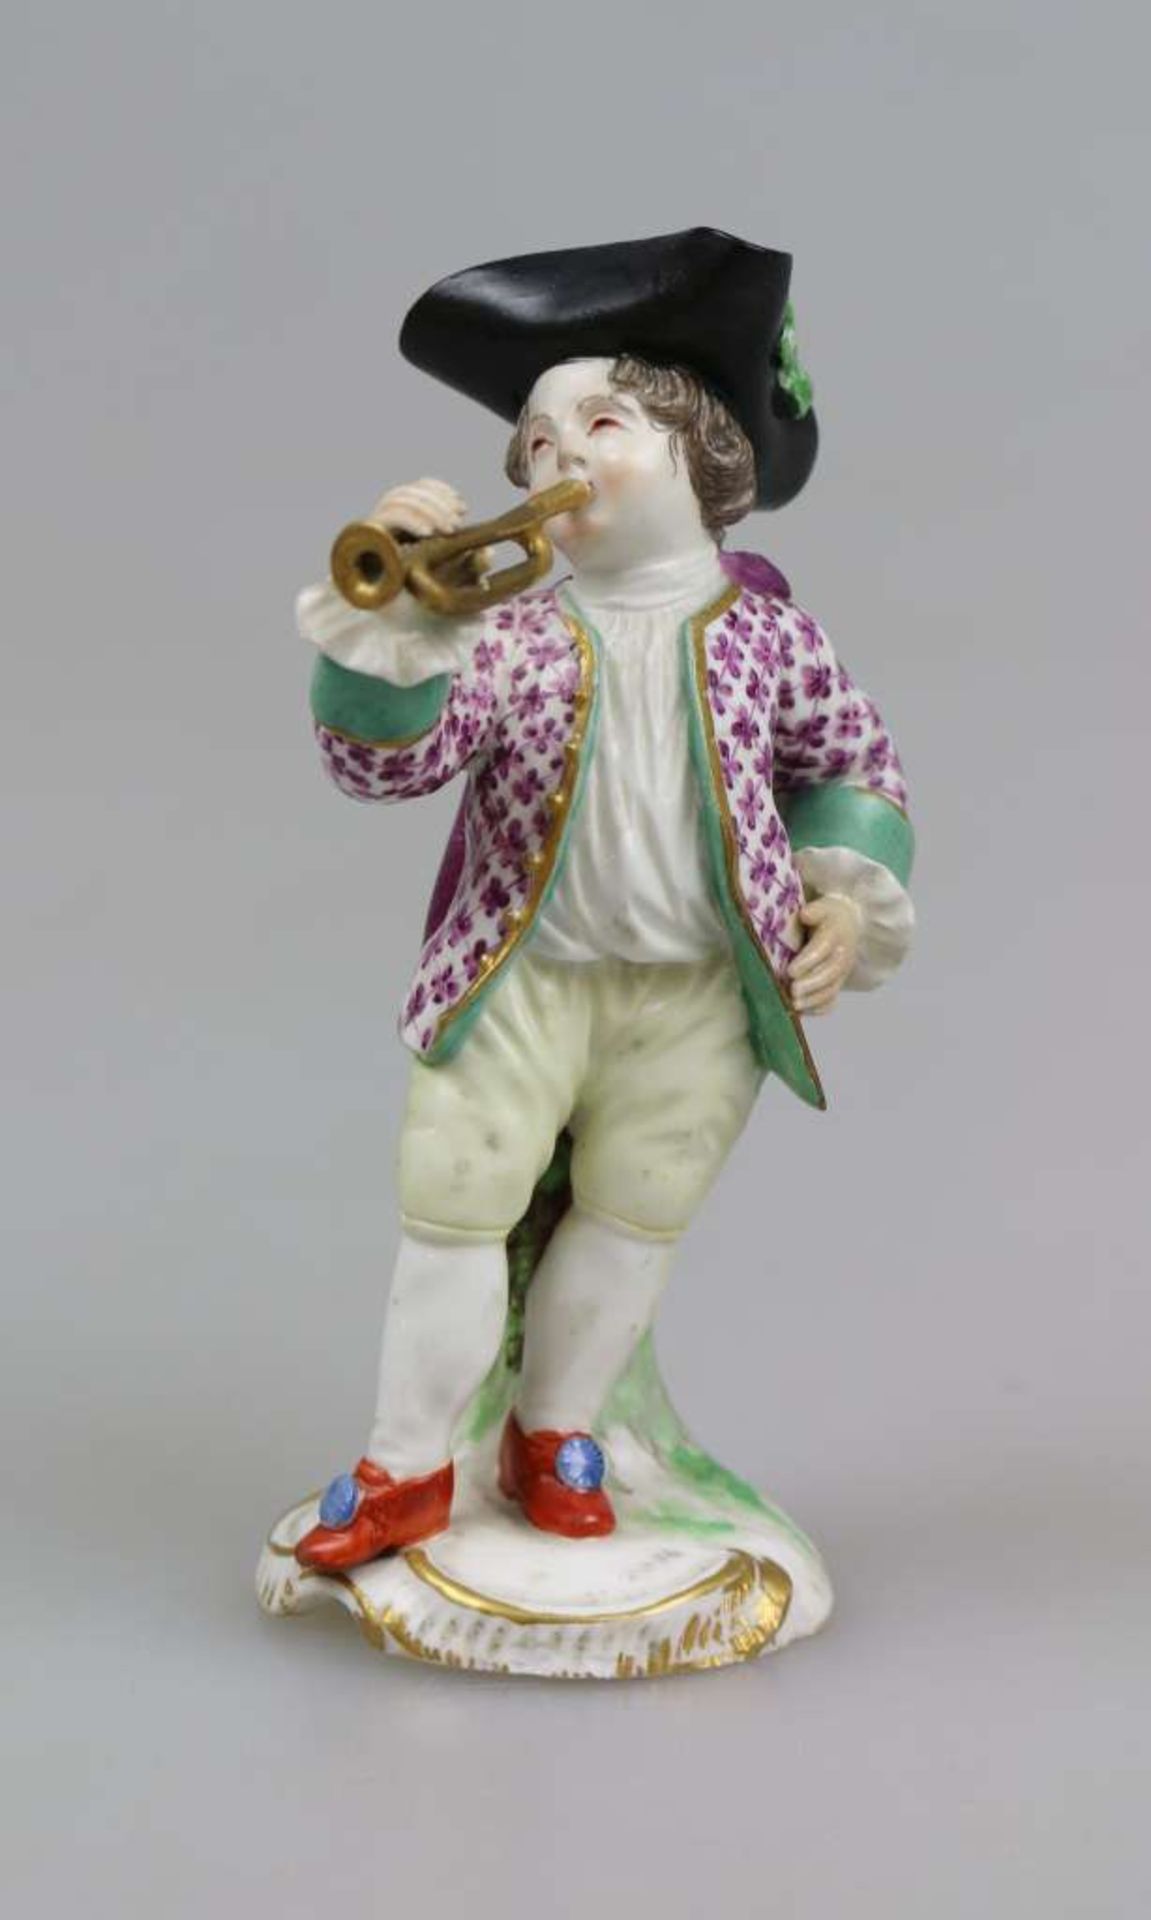 Höchst, Porzellanfigur "Trompeter" um 1760, Trompete spielender Knabe mit Umhang und Dreispitz,